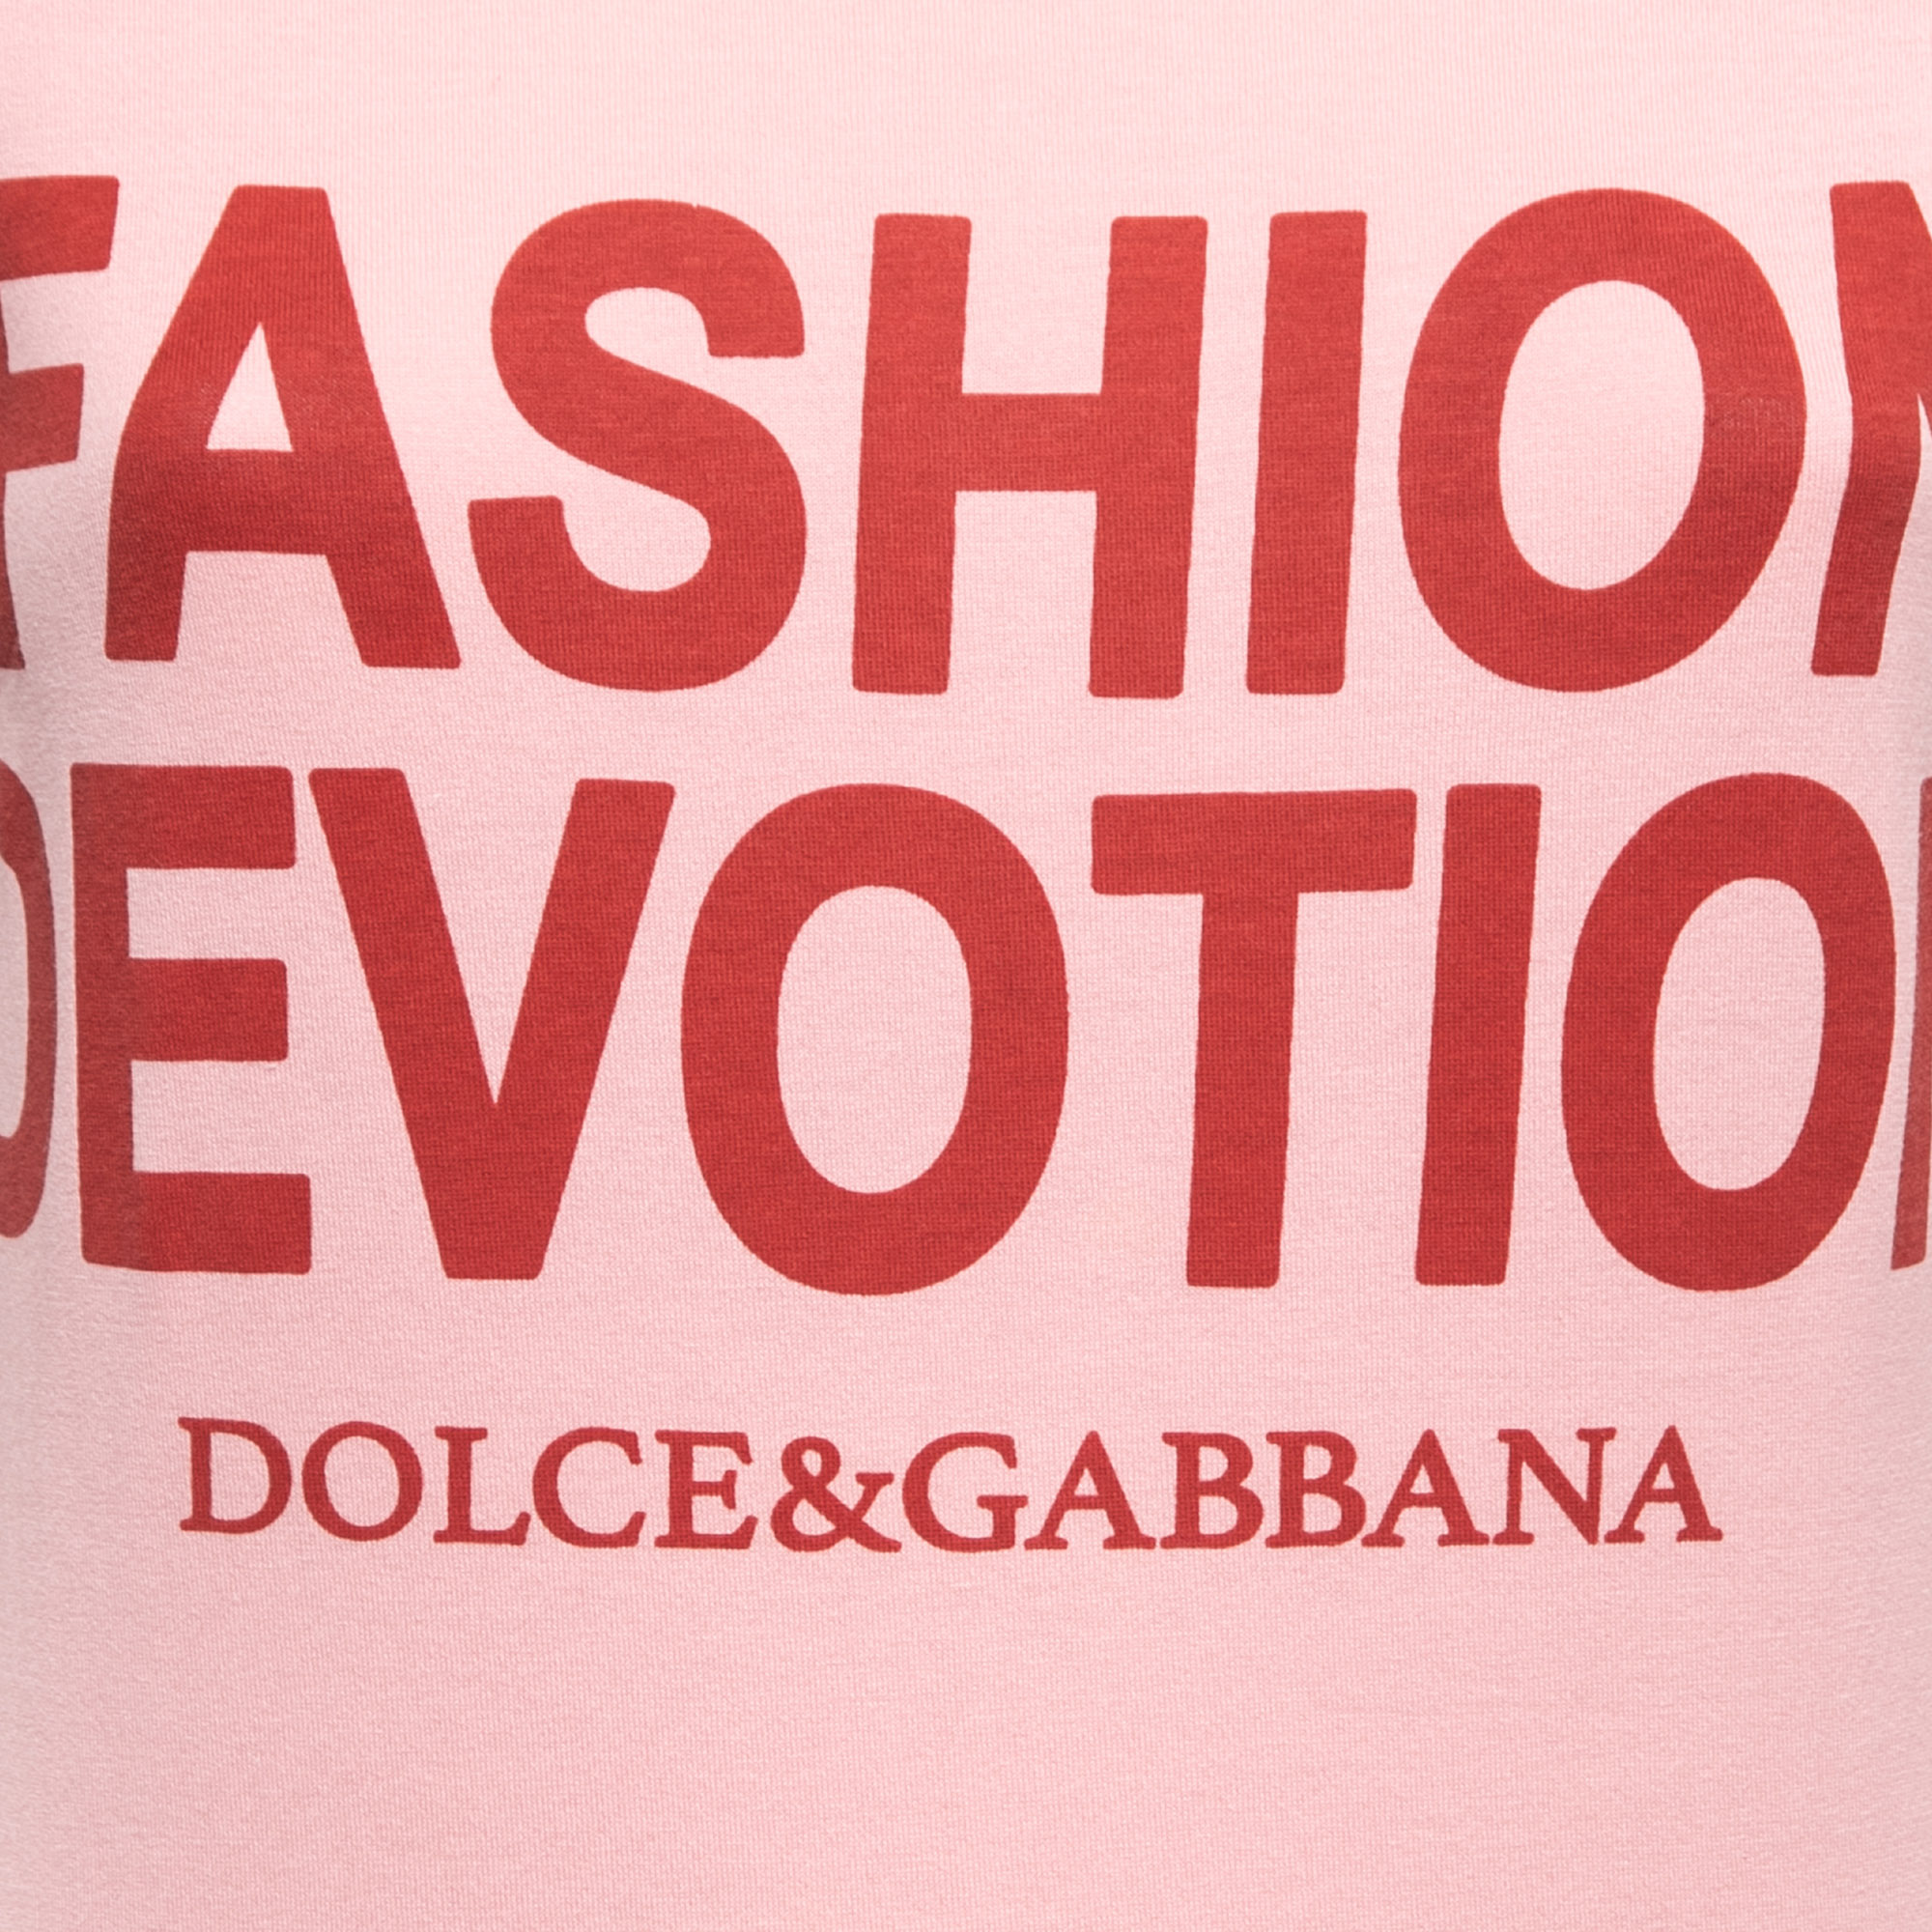 Dolce & Gabbana Pink Fashion Devotion Print Cotton Crew Neck T-Shirt XS